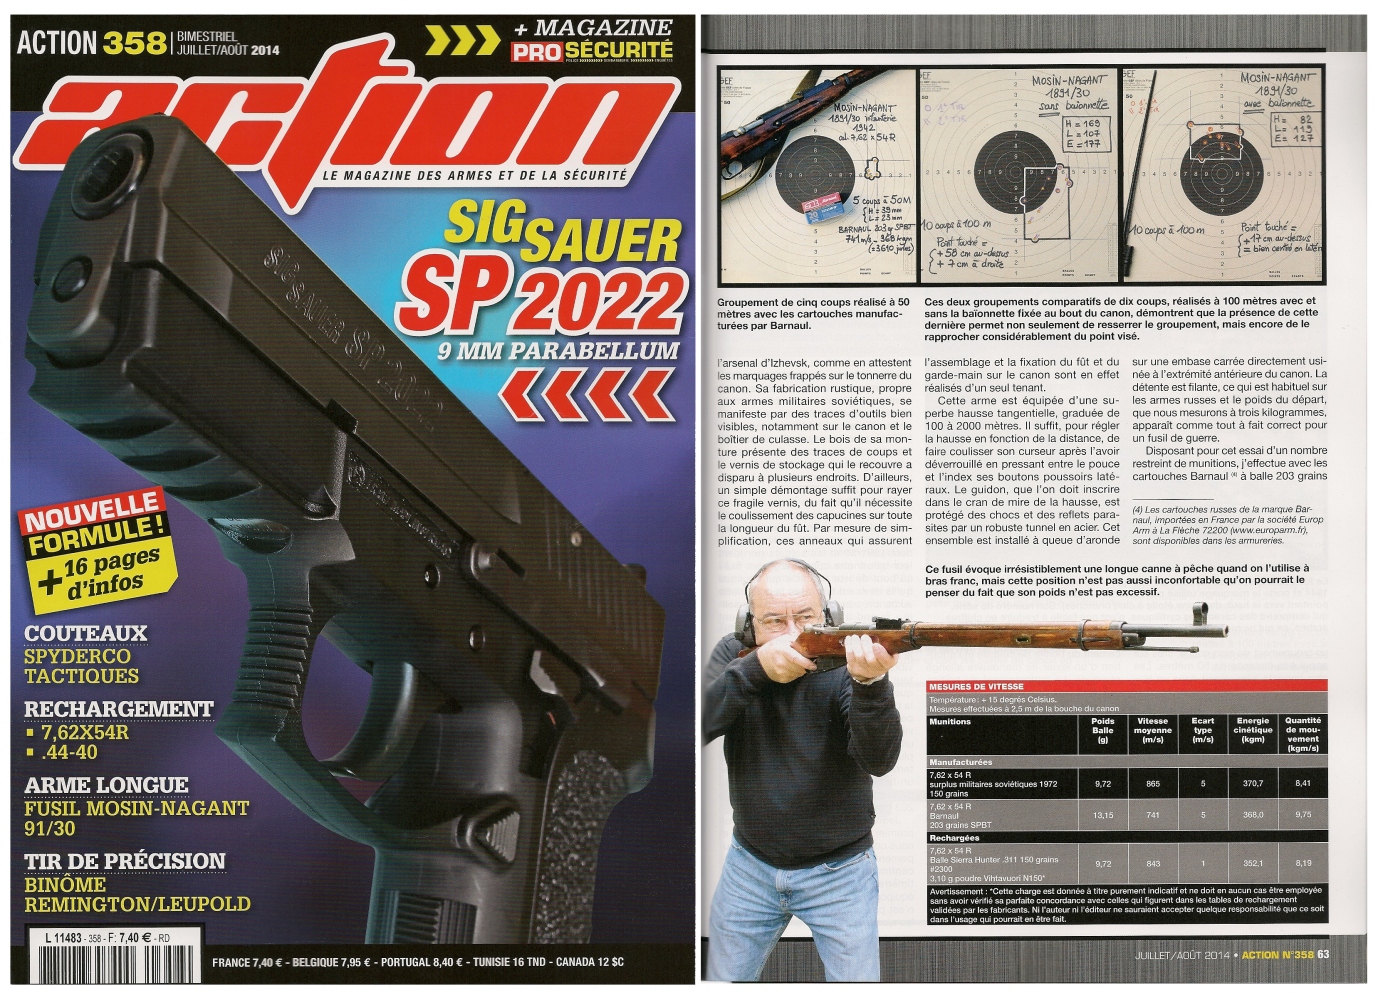 Le banc d'essai du fusil Mosin-Nagant modèle 1891/30 a été publié sur 6 pages dans le magazine Action n° 358 (juillet/août 2014).